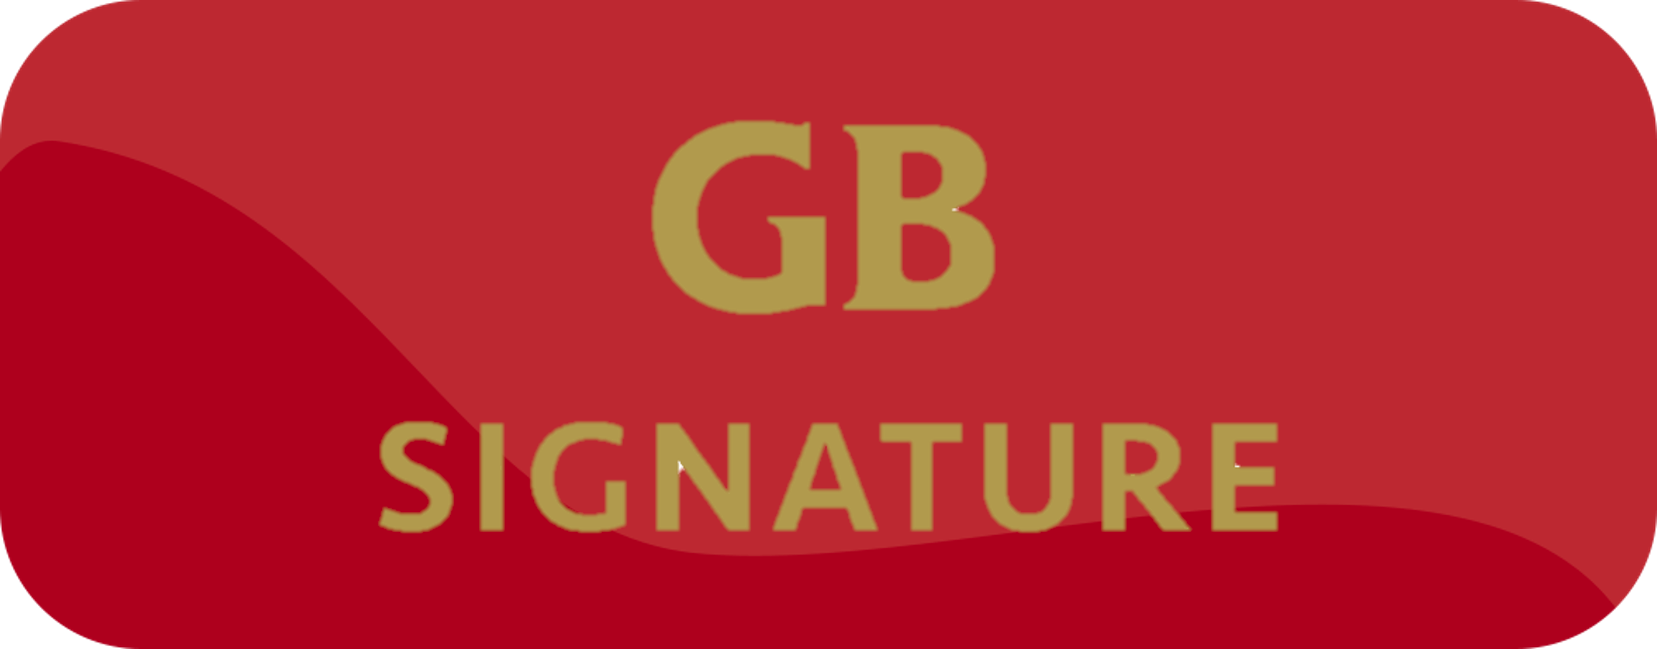 GB Gräddglass/GB Signature